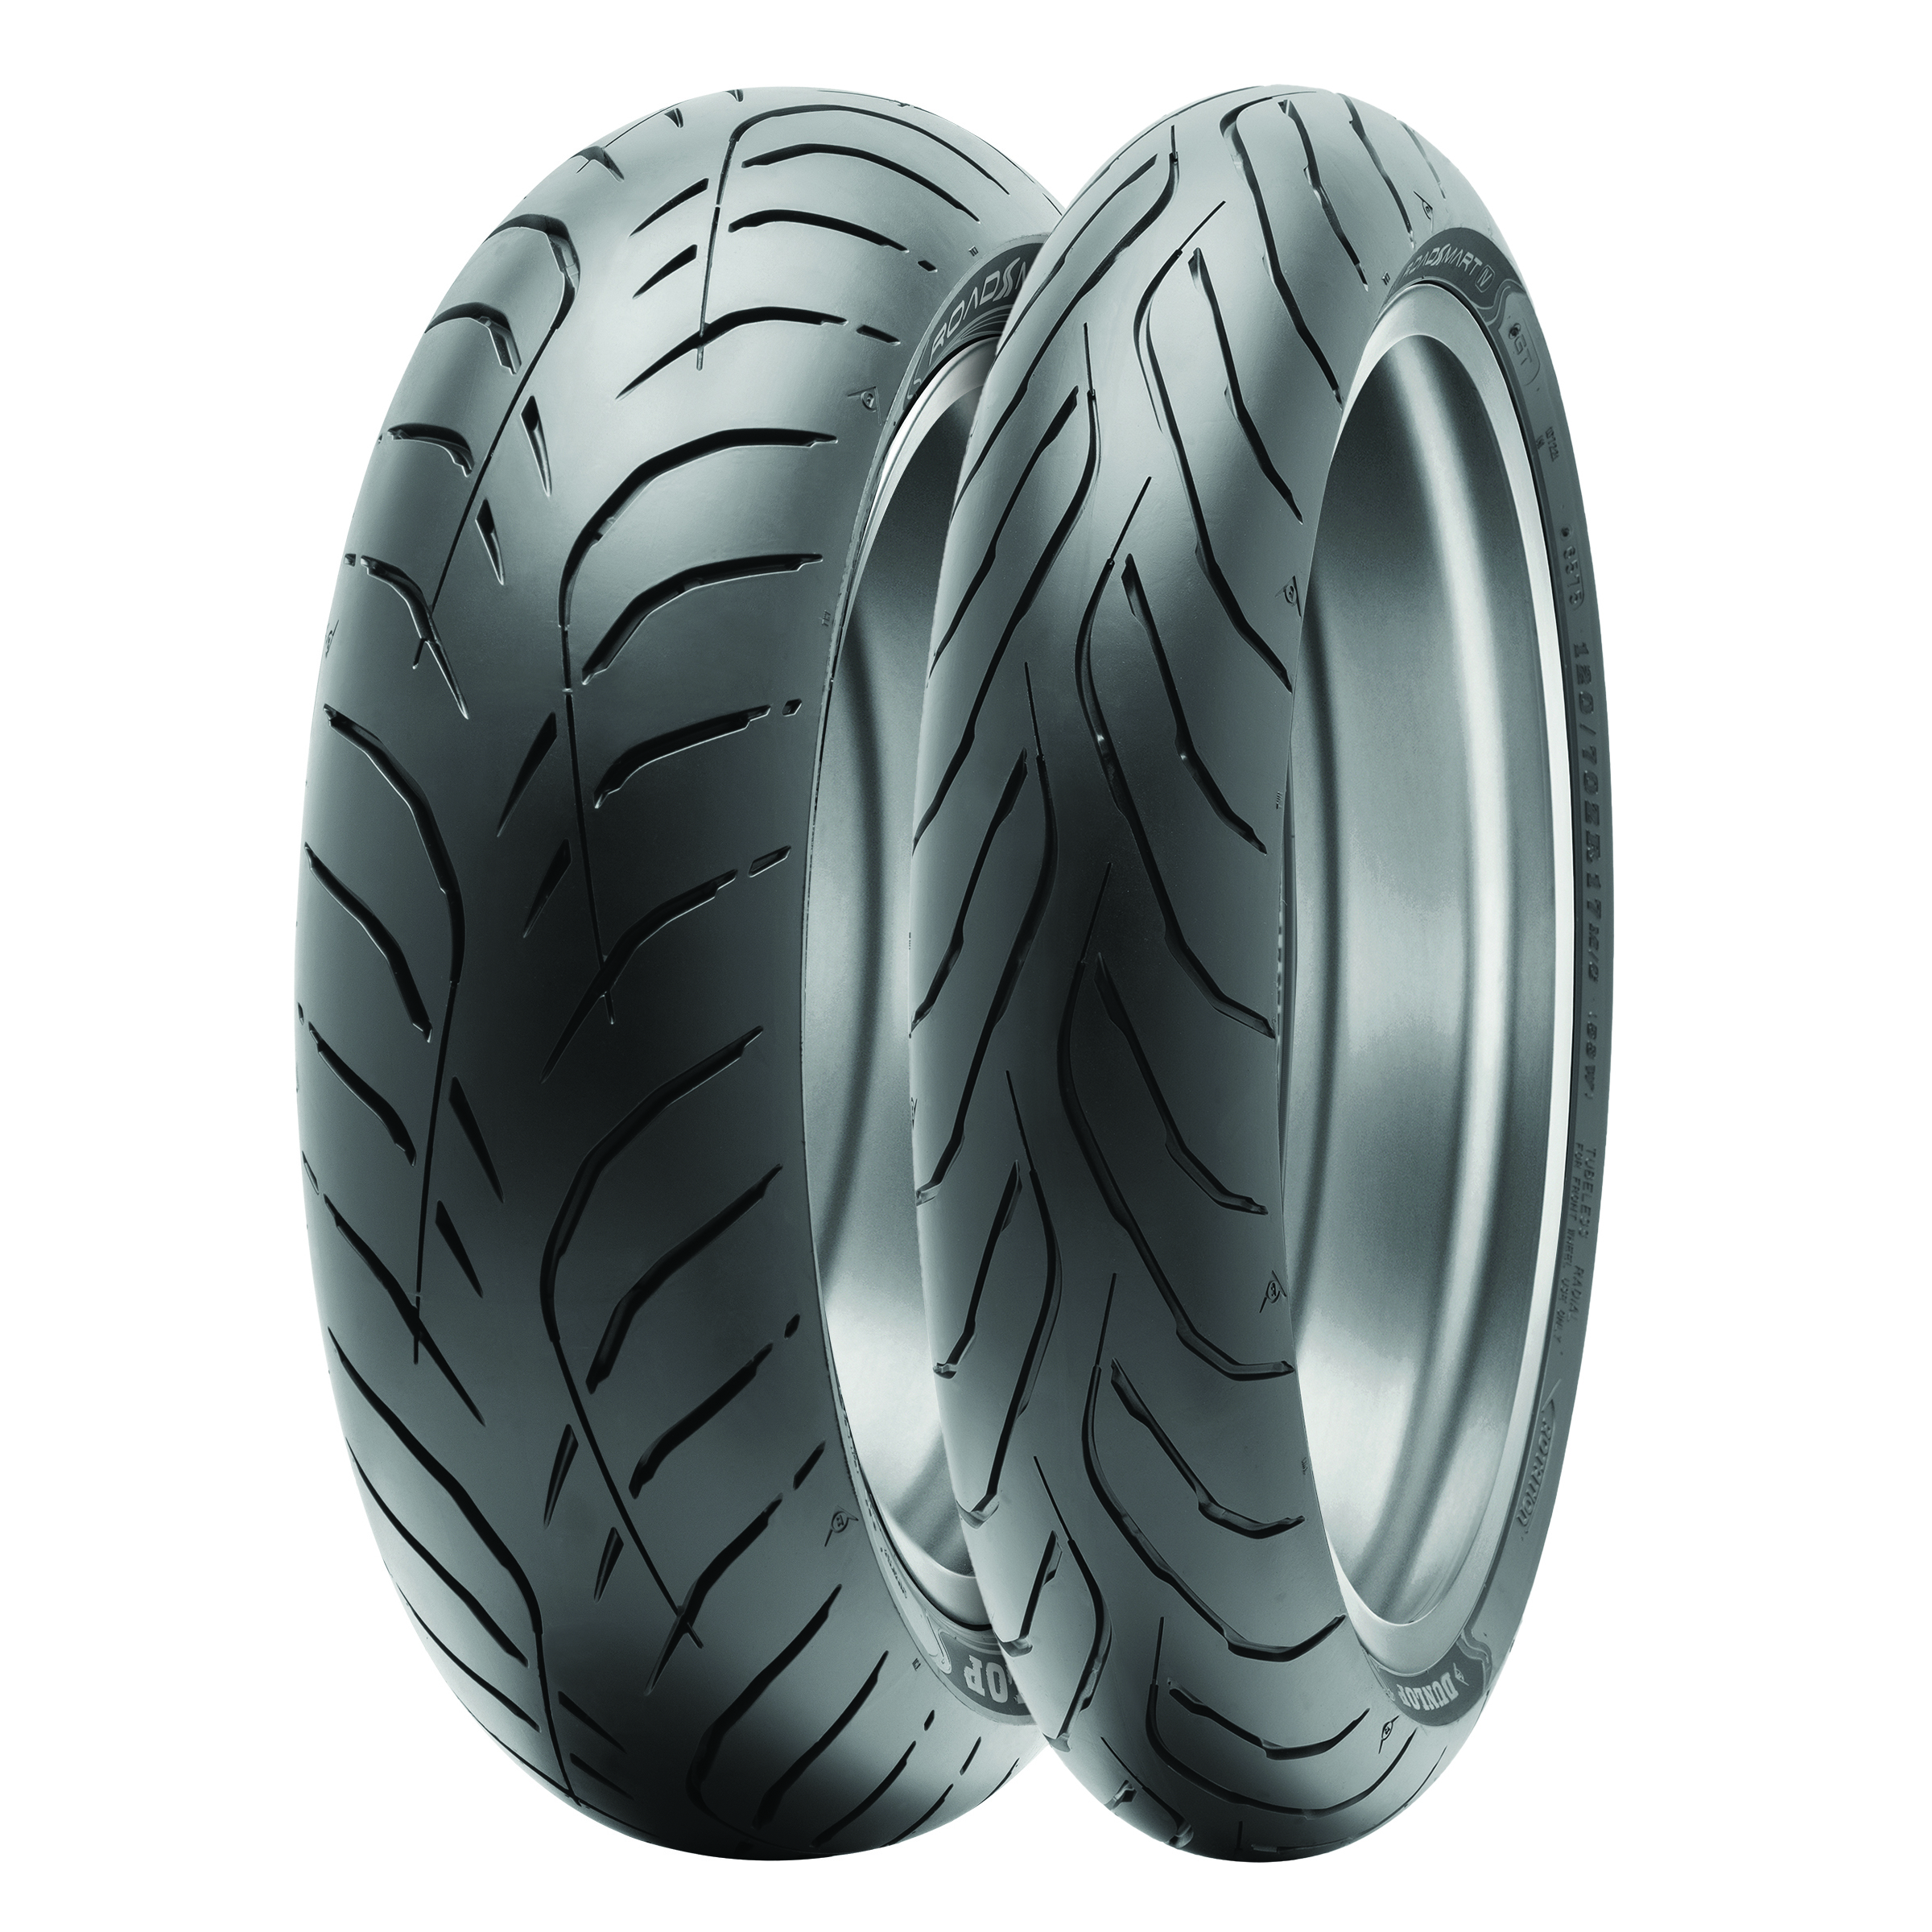 Gomme Nuove Dunlop 160/60 R18 70W SPORTMAX ROADSMART IV pneumatici nuovi Estivo